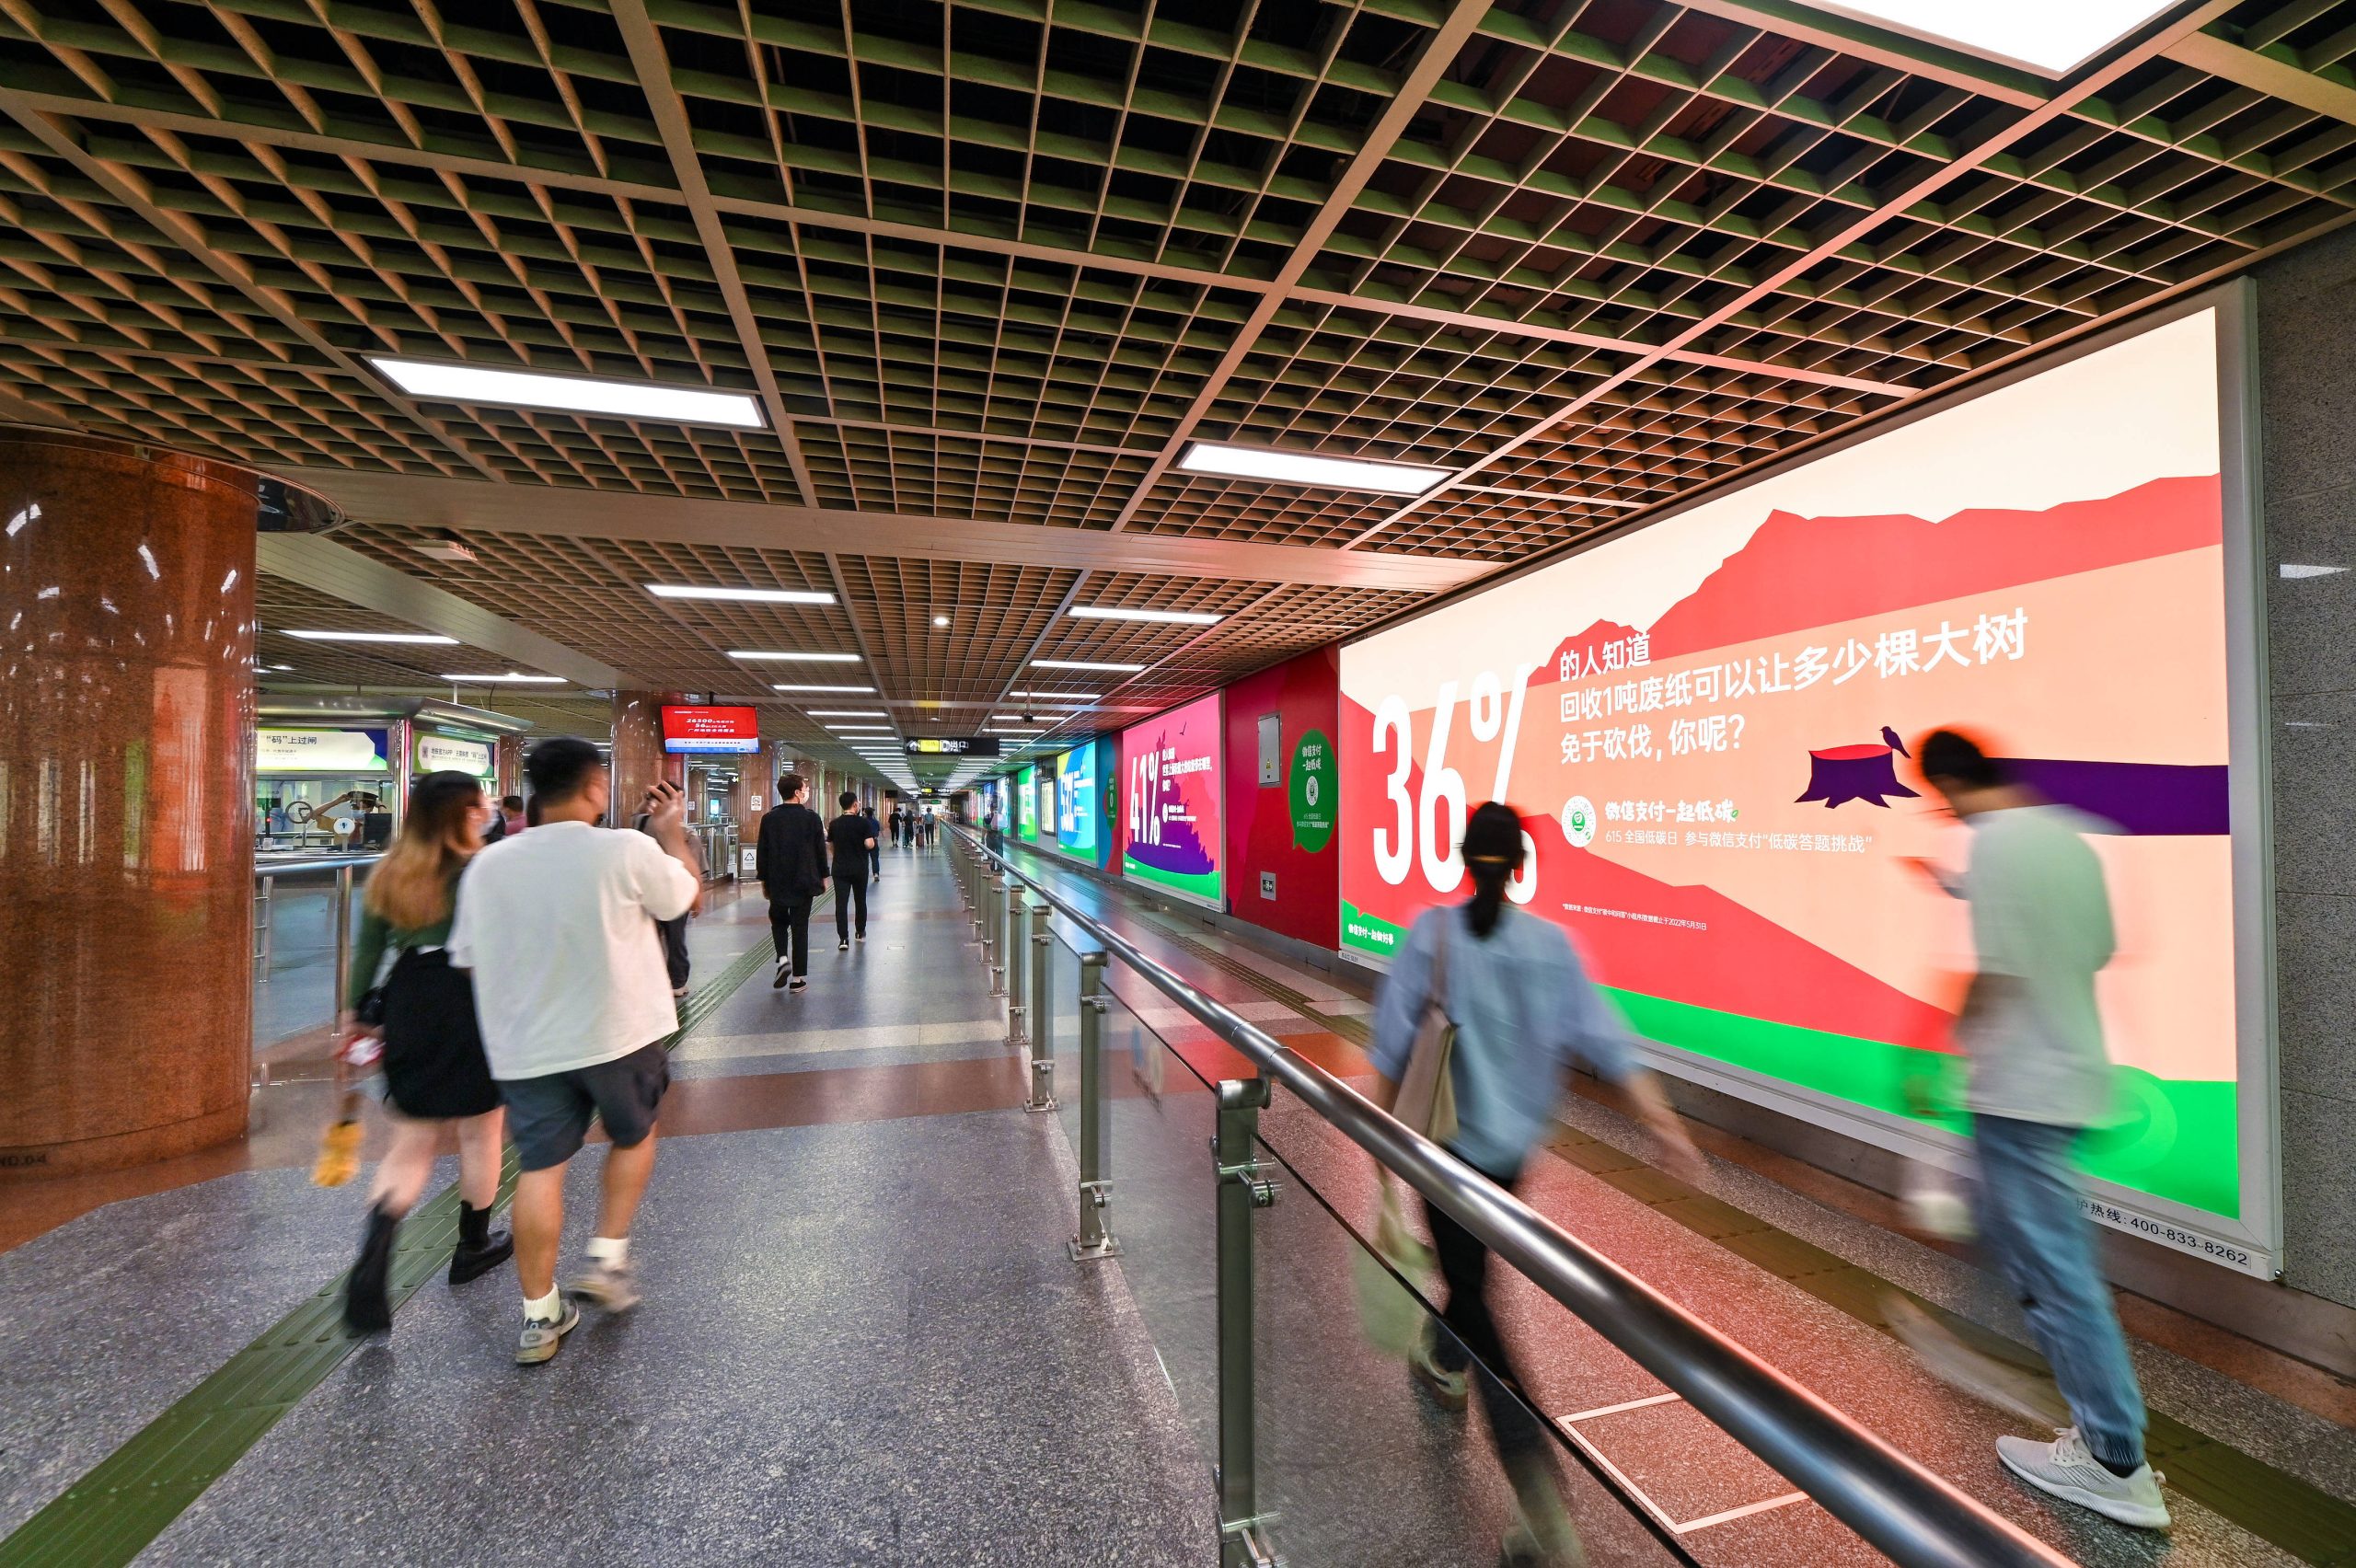 创意地铁广告引关注 微信支付上线“低碳答题挑战”活动